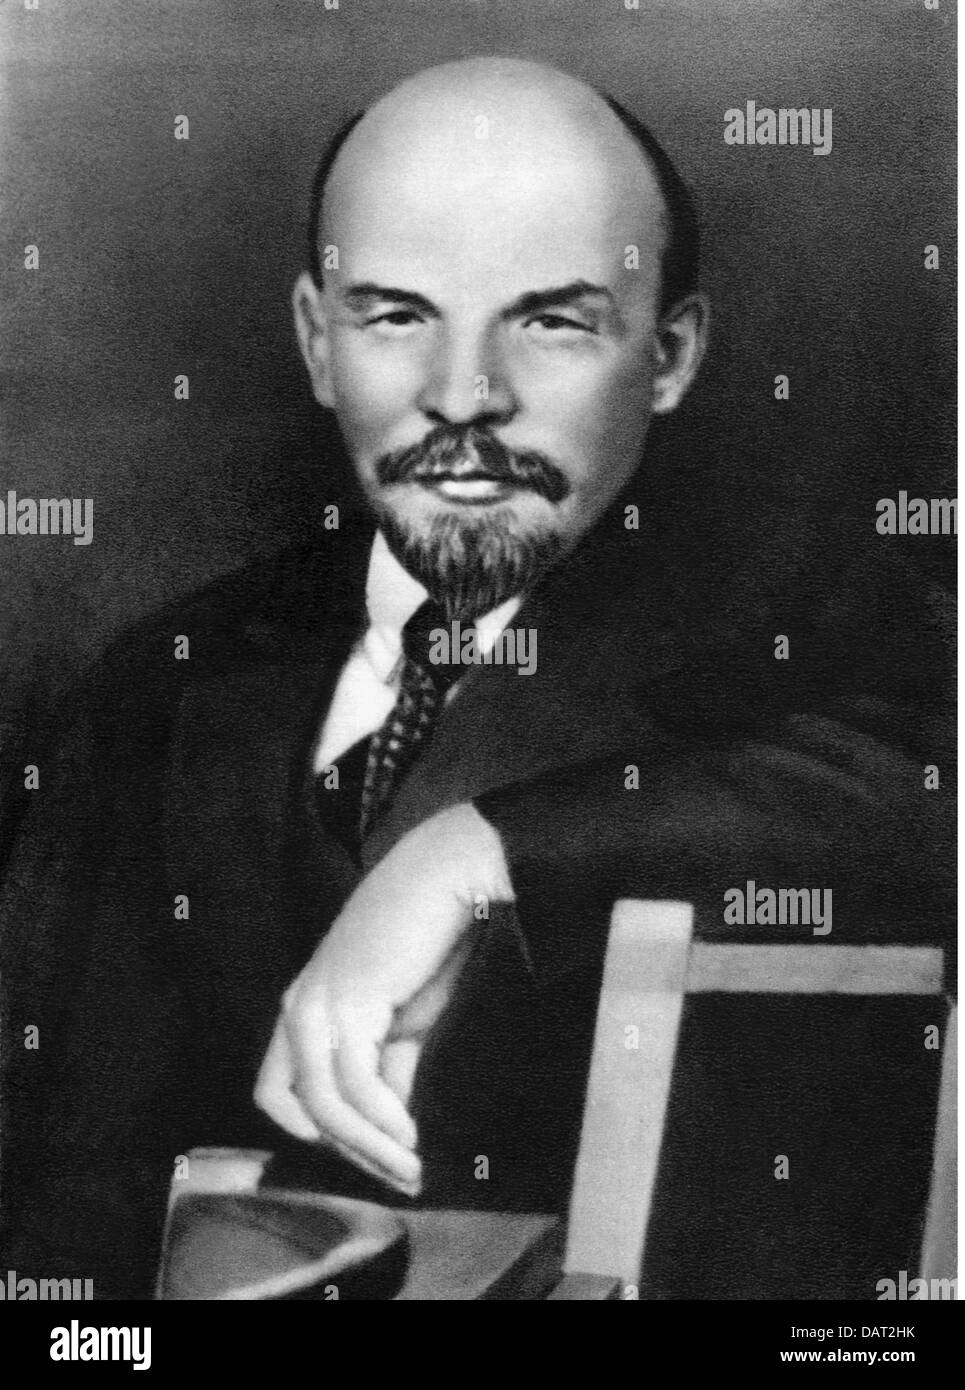 Lénine (Vladimir Ilyich Ulyanov), 22.4.1870 - 21.1.1924, politicien russe, demi-longueur, années 1920, Banque D'Images